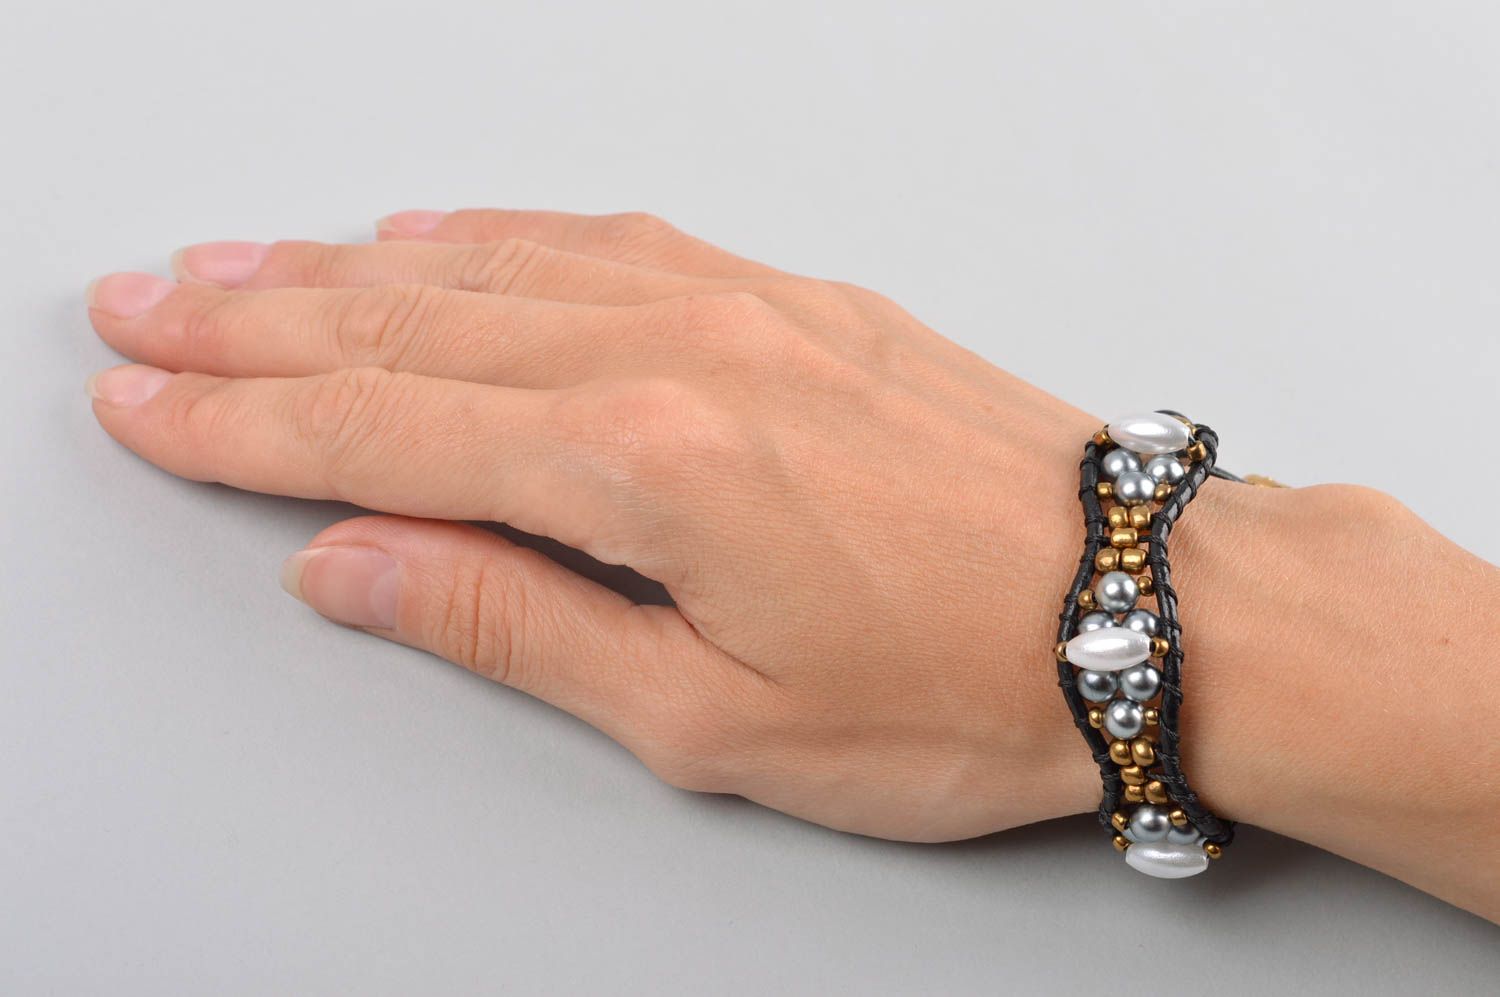 Handmade bracelet unusual bracelet for women gift ideas unusual gift for girls photo 5